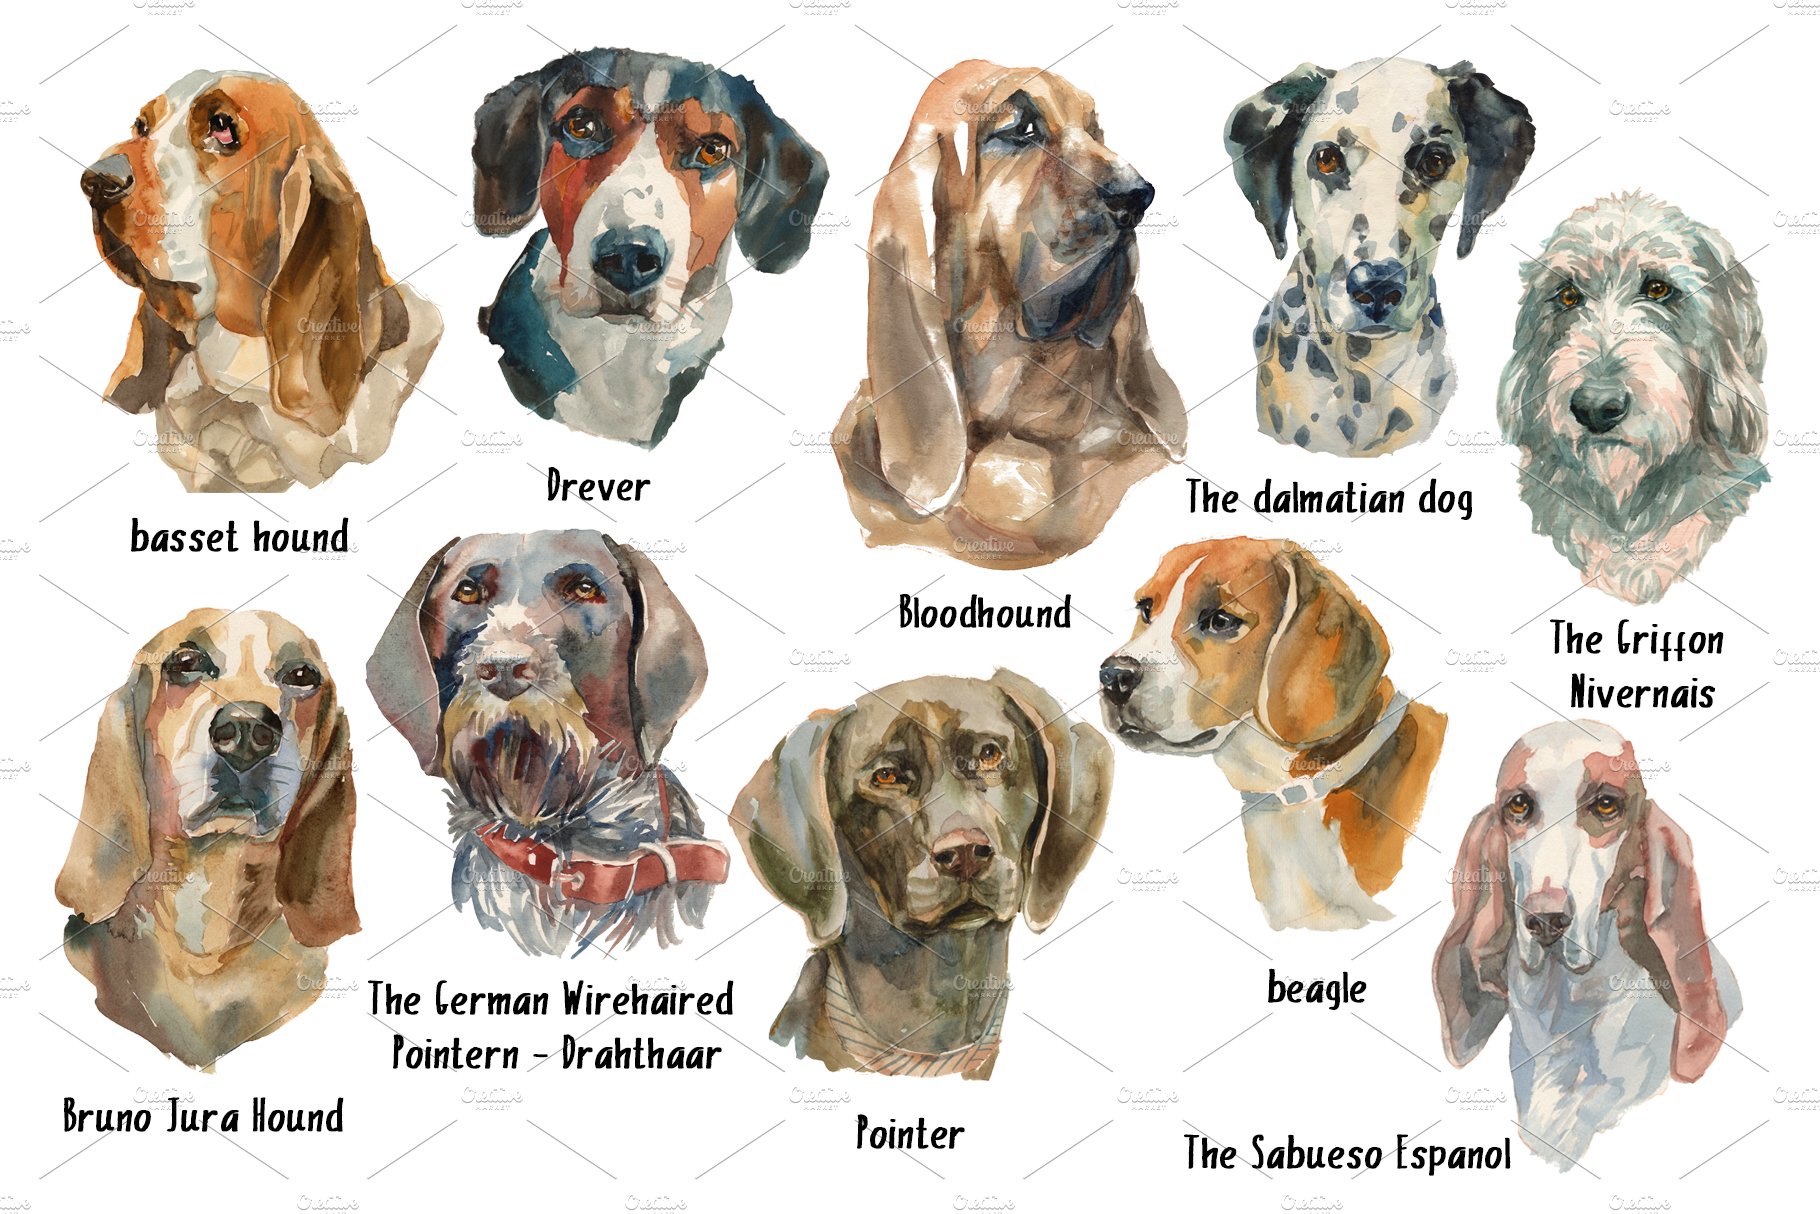 Sherlock Dogs Watercolor Set.